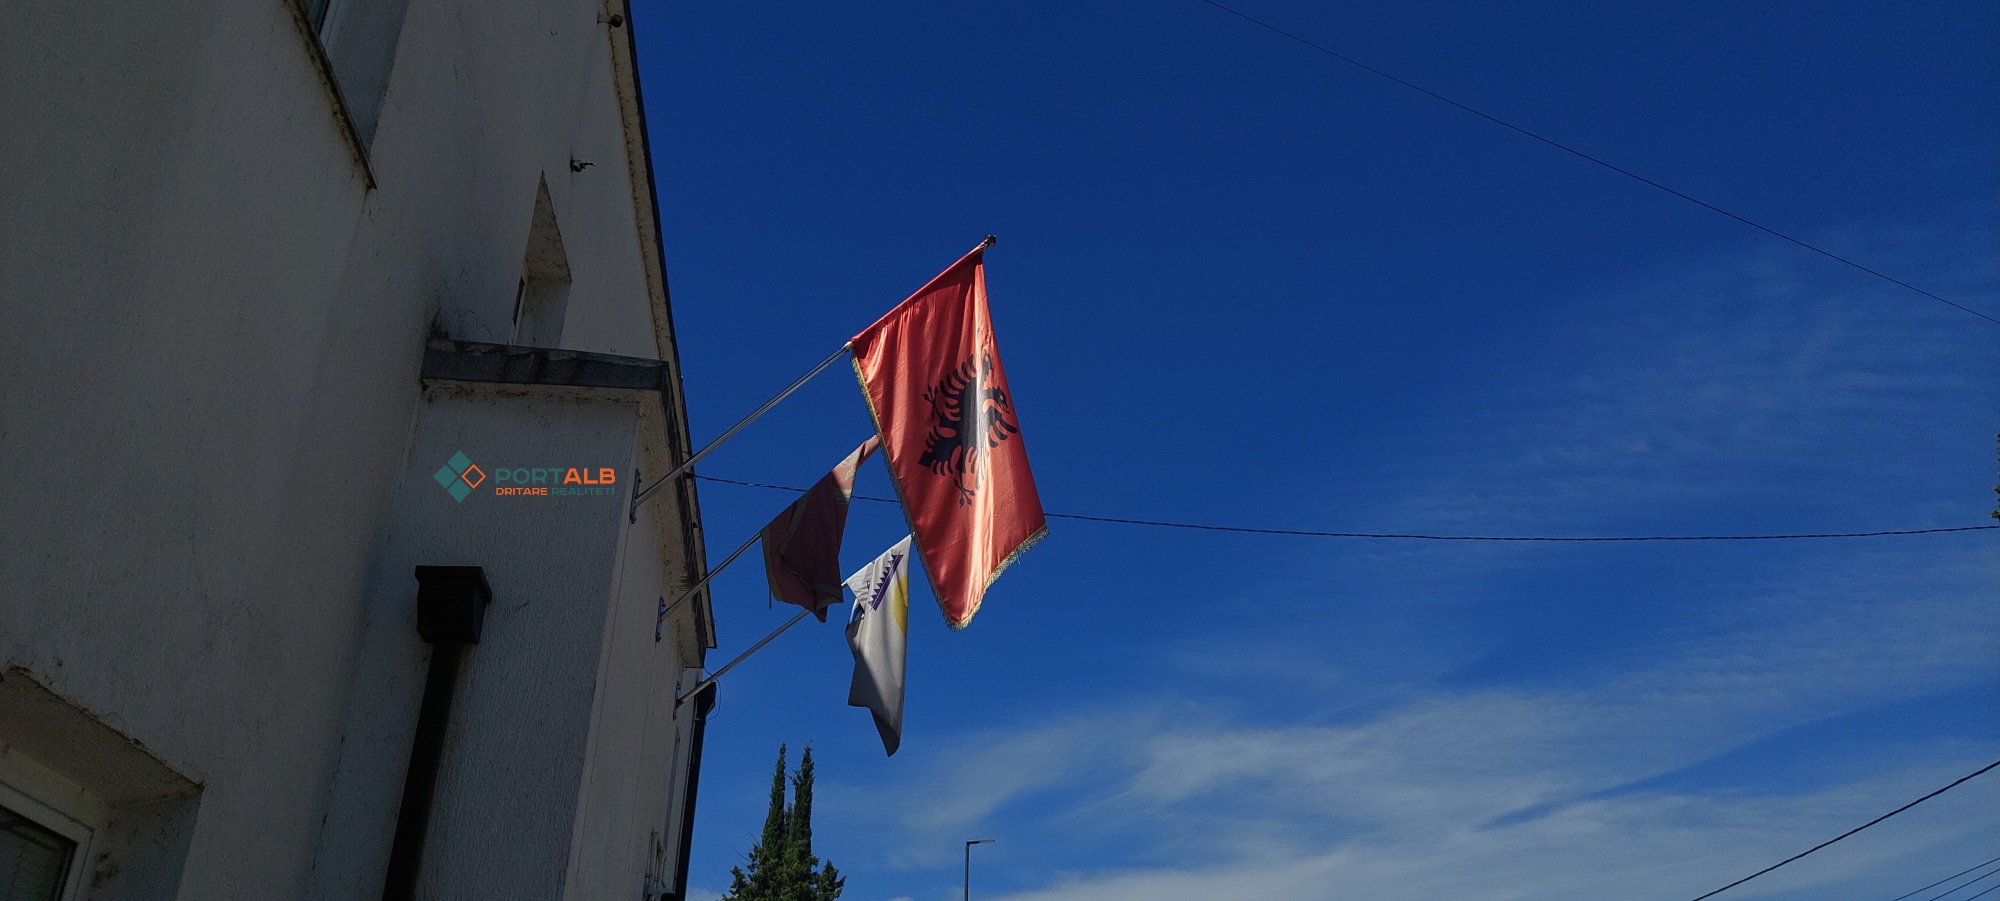 Në Komunën e Tuzit, flamur shqiptar dhe flamuri i Malit të Zi. Foto nga Faton Curri - Portalb.mk